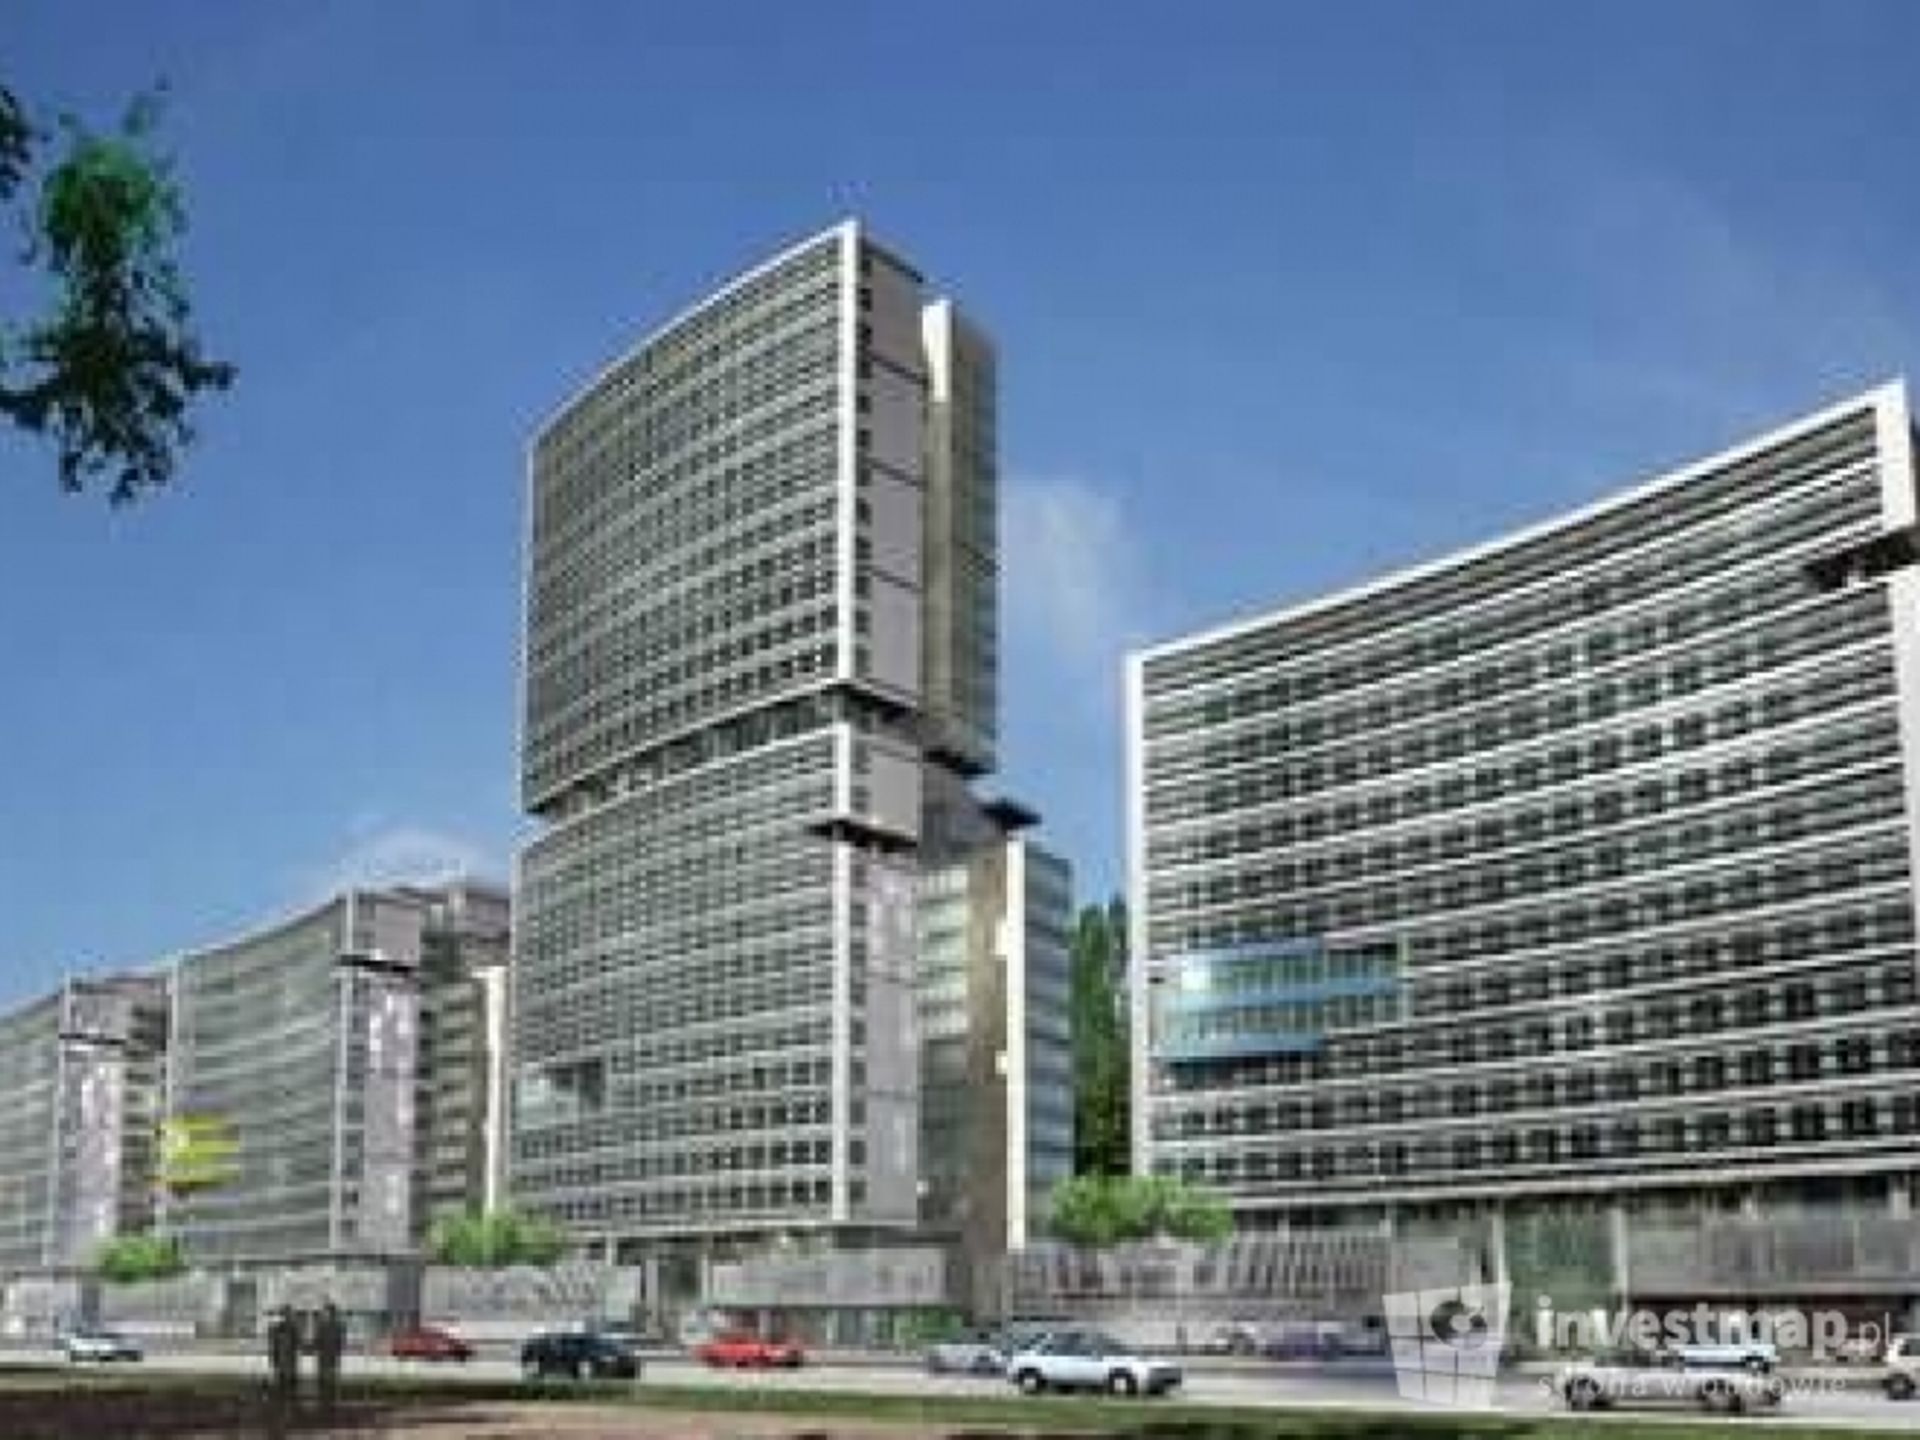  Firma Adgar Poland zrefinansowała kredytowanie i planuje dalszy rozwój